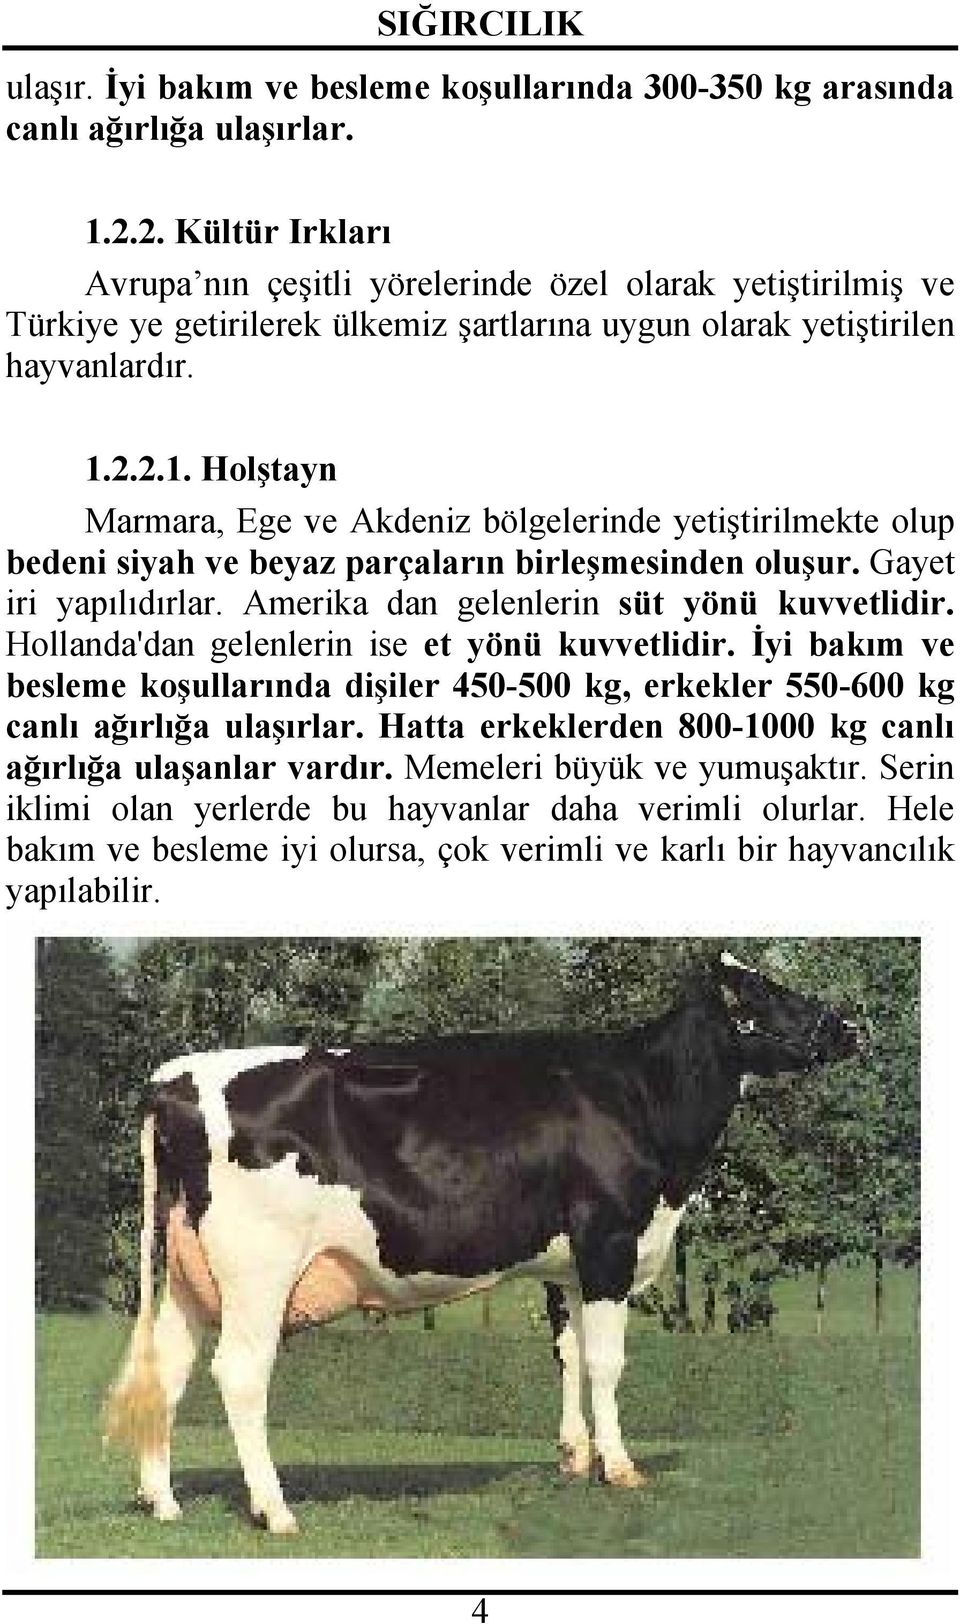 2.2.1. Holştayn Marmara, Ege ve Akdeniz bölgelerinde yetiştirilmekte olup bedeni siyah ve beyaz parçaların birleşmesinden oluşur. Gayet iri yapılıdırlar. Amerika dan gelenlerin süt yönü kuvvetlidir.